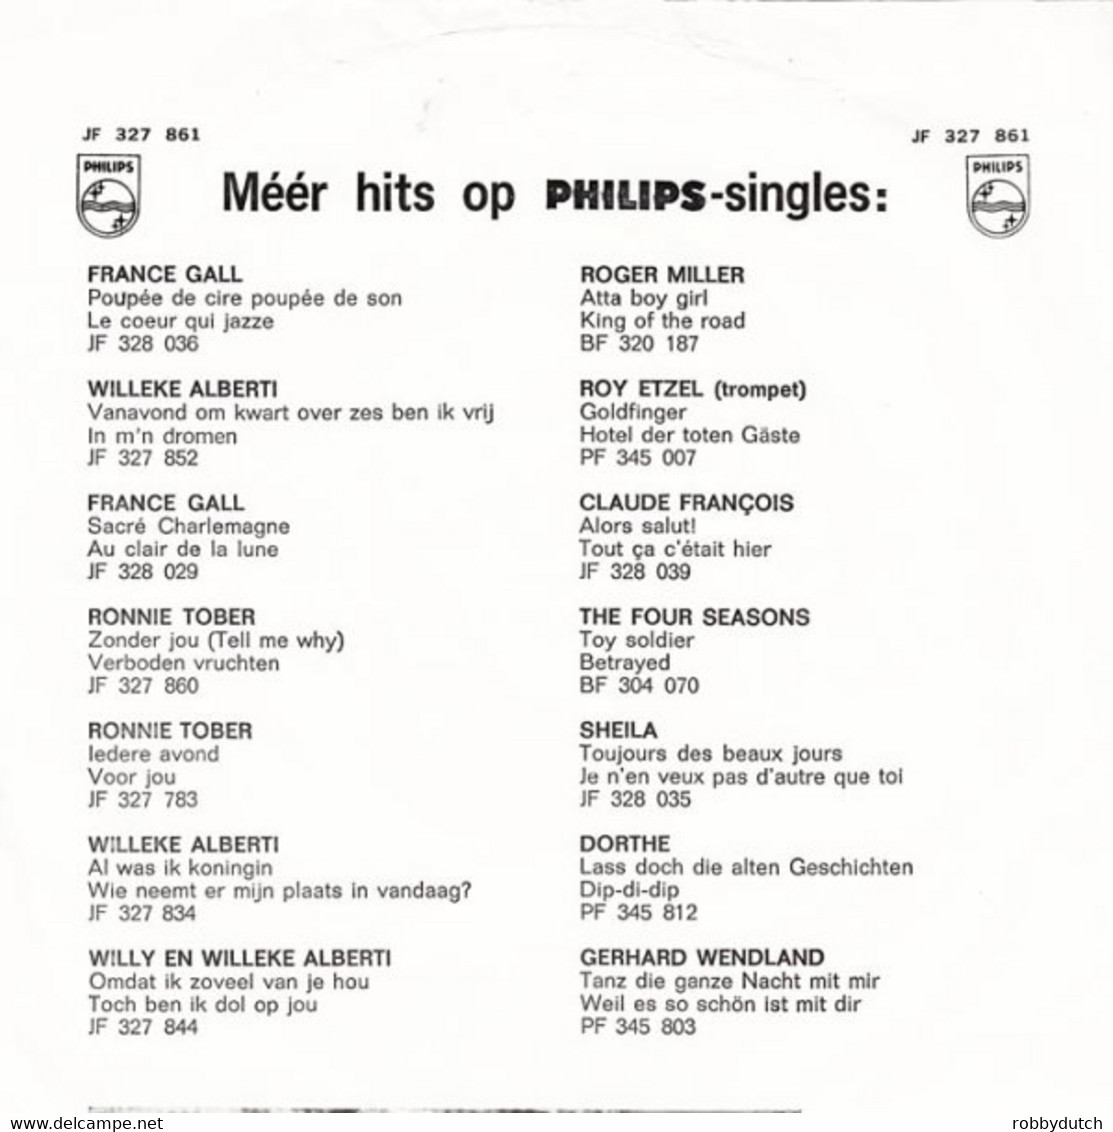 * 7"  *  JOHNNY LION - SOPHIETJE (Holland 1965) - Otros - Canción Neerlandesa